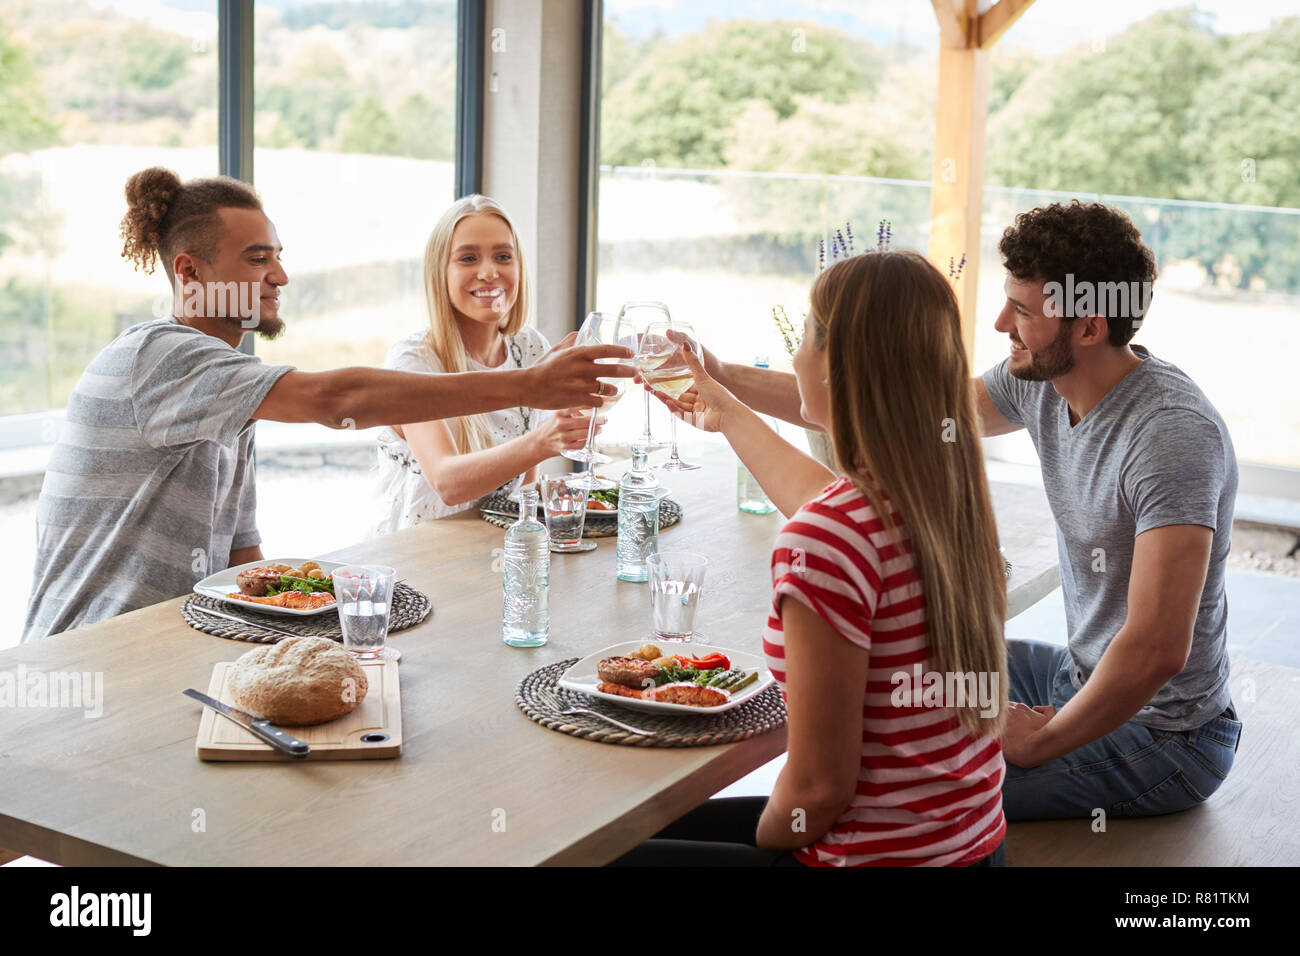 Vier junge erwachsene Freunde feiern bei einem Abendessen ihre Weingläser anheben, in der Nähe Stockfoto